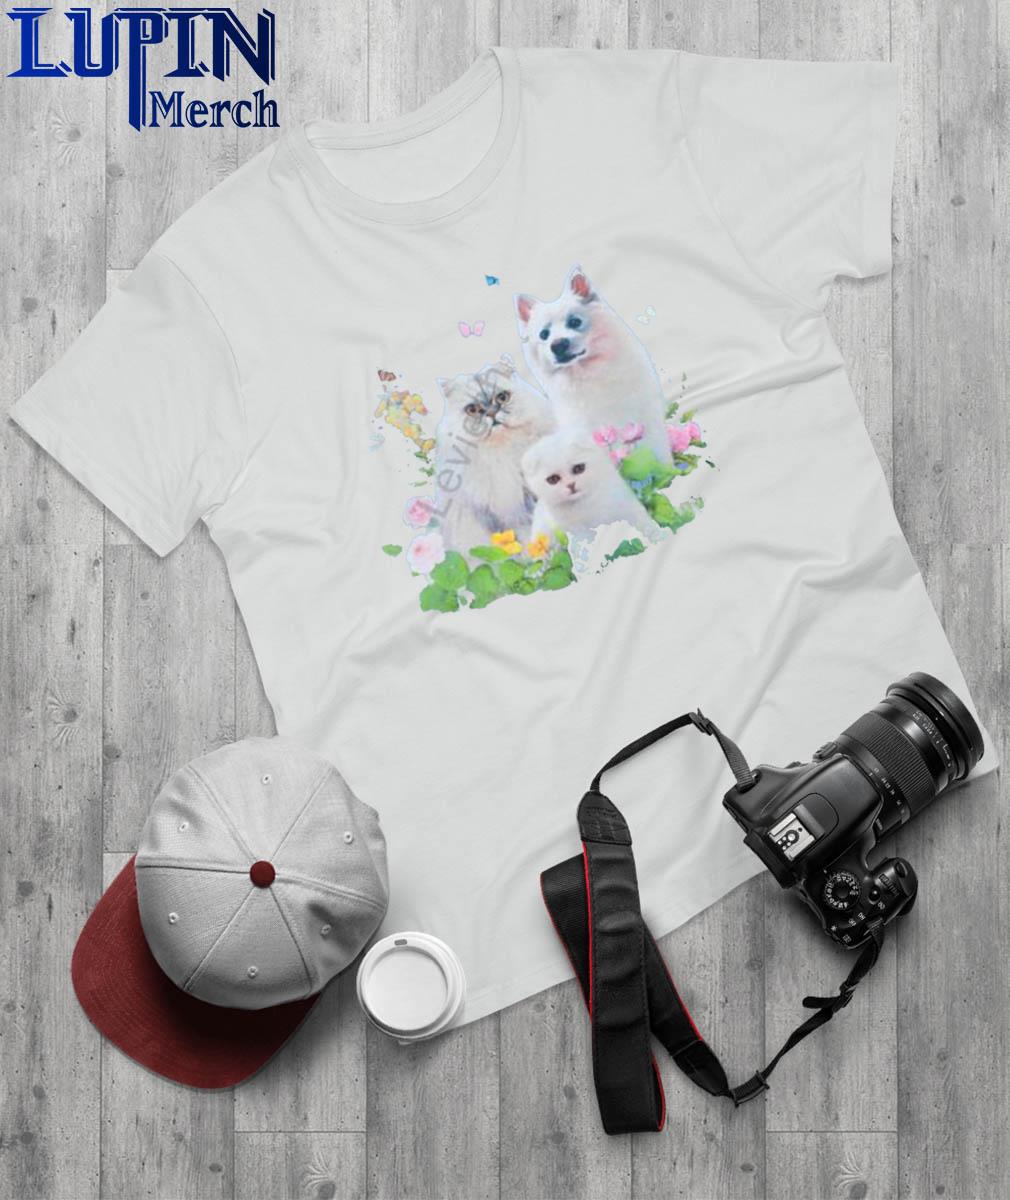 Qtcinderella Merch Pet Shirt - new shirt, t-shirt, hoodie, tank